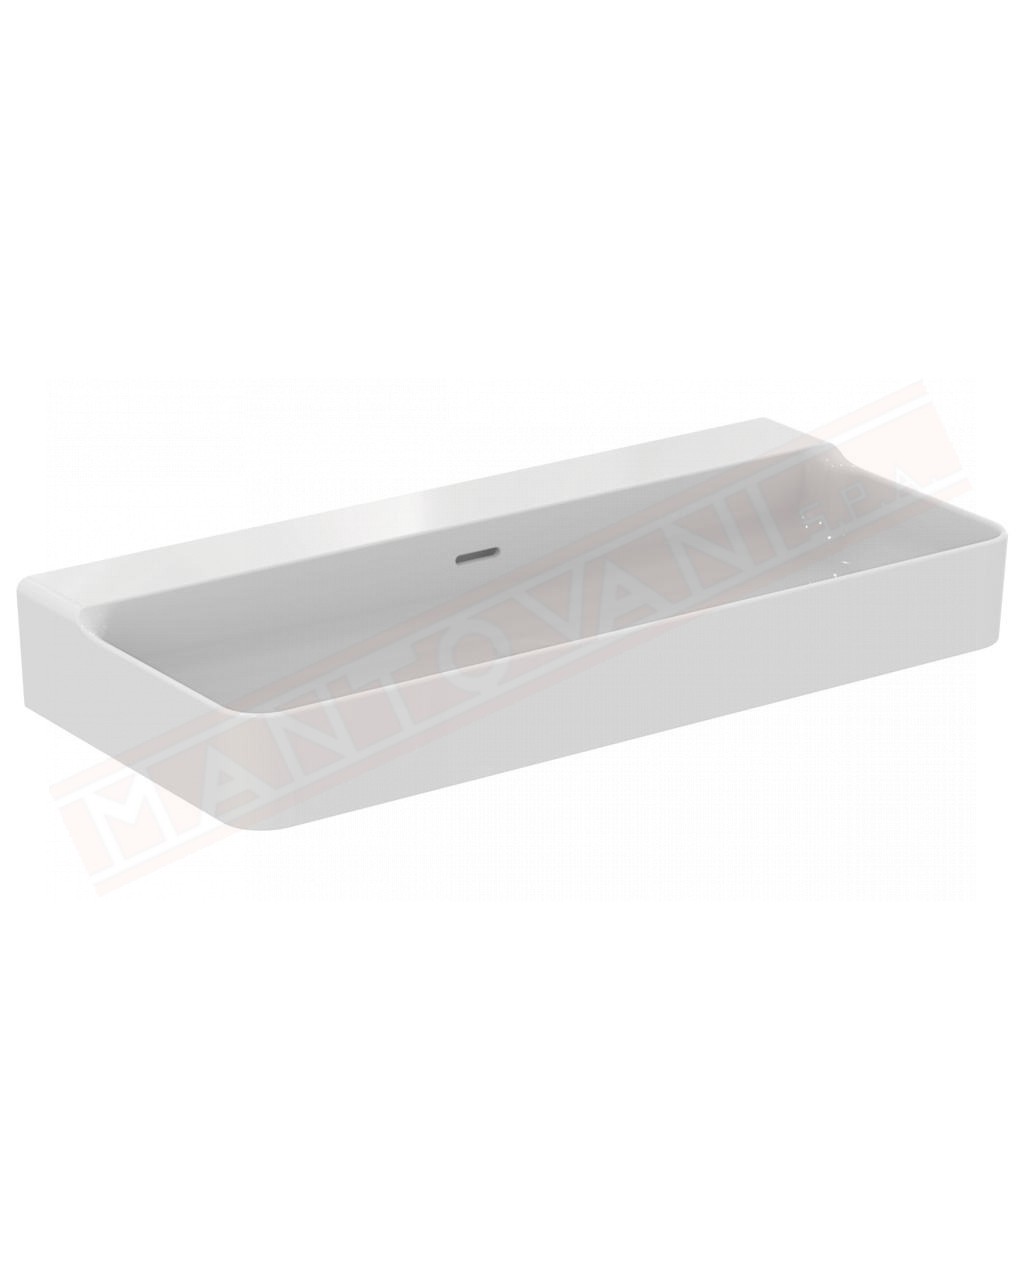 Ideal Standard Conca lavabo bagno da appoggio 100x45 cm con troppopieno e senza foro rubinetto lato inferiore rettificato